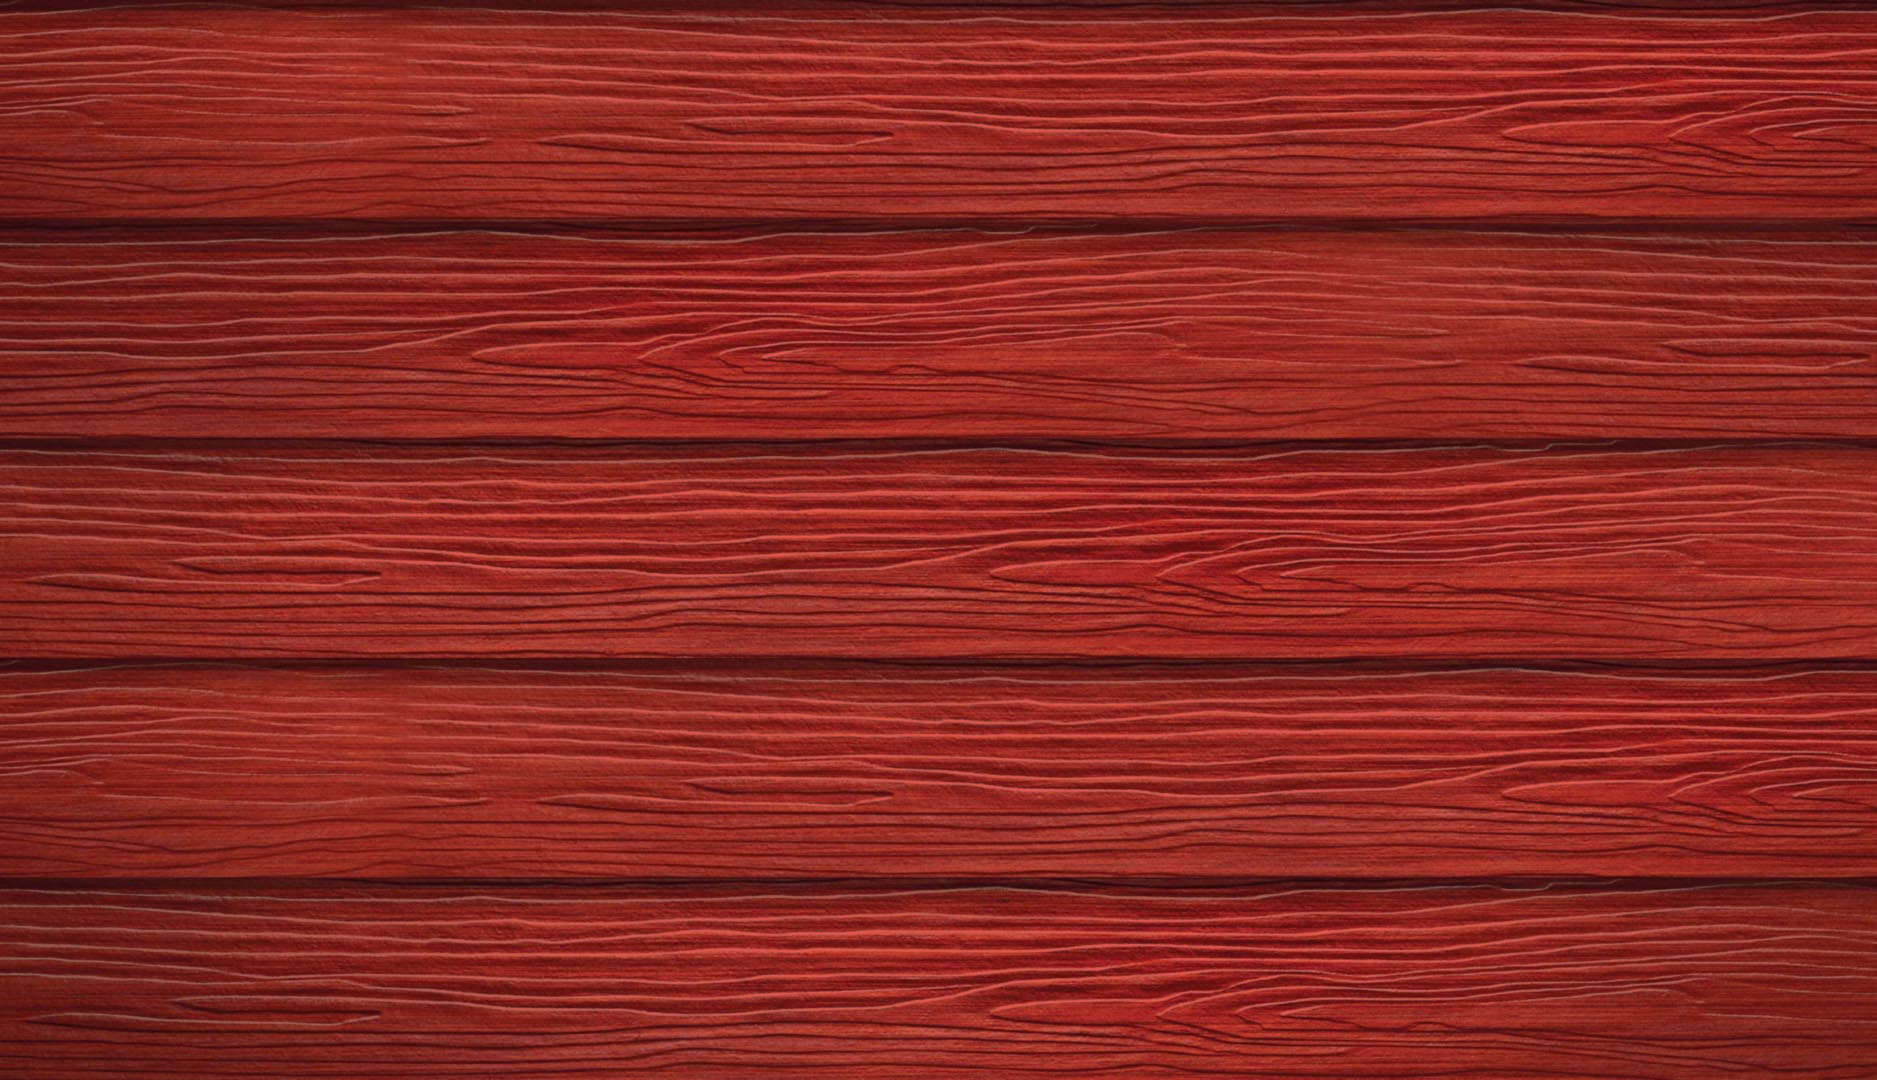 ไม้ฝาเอสซีจี กลุ่มสีสเปเชียล ขนาด 15x300x0.8 ซม. สีแดงทับทิม